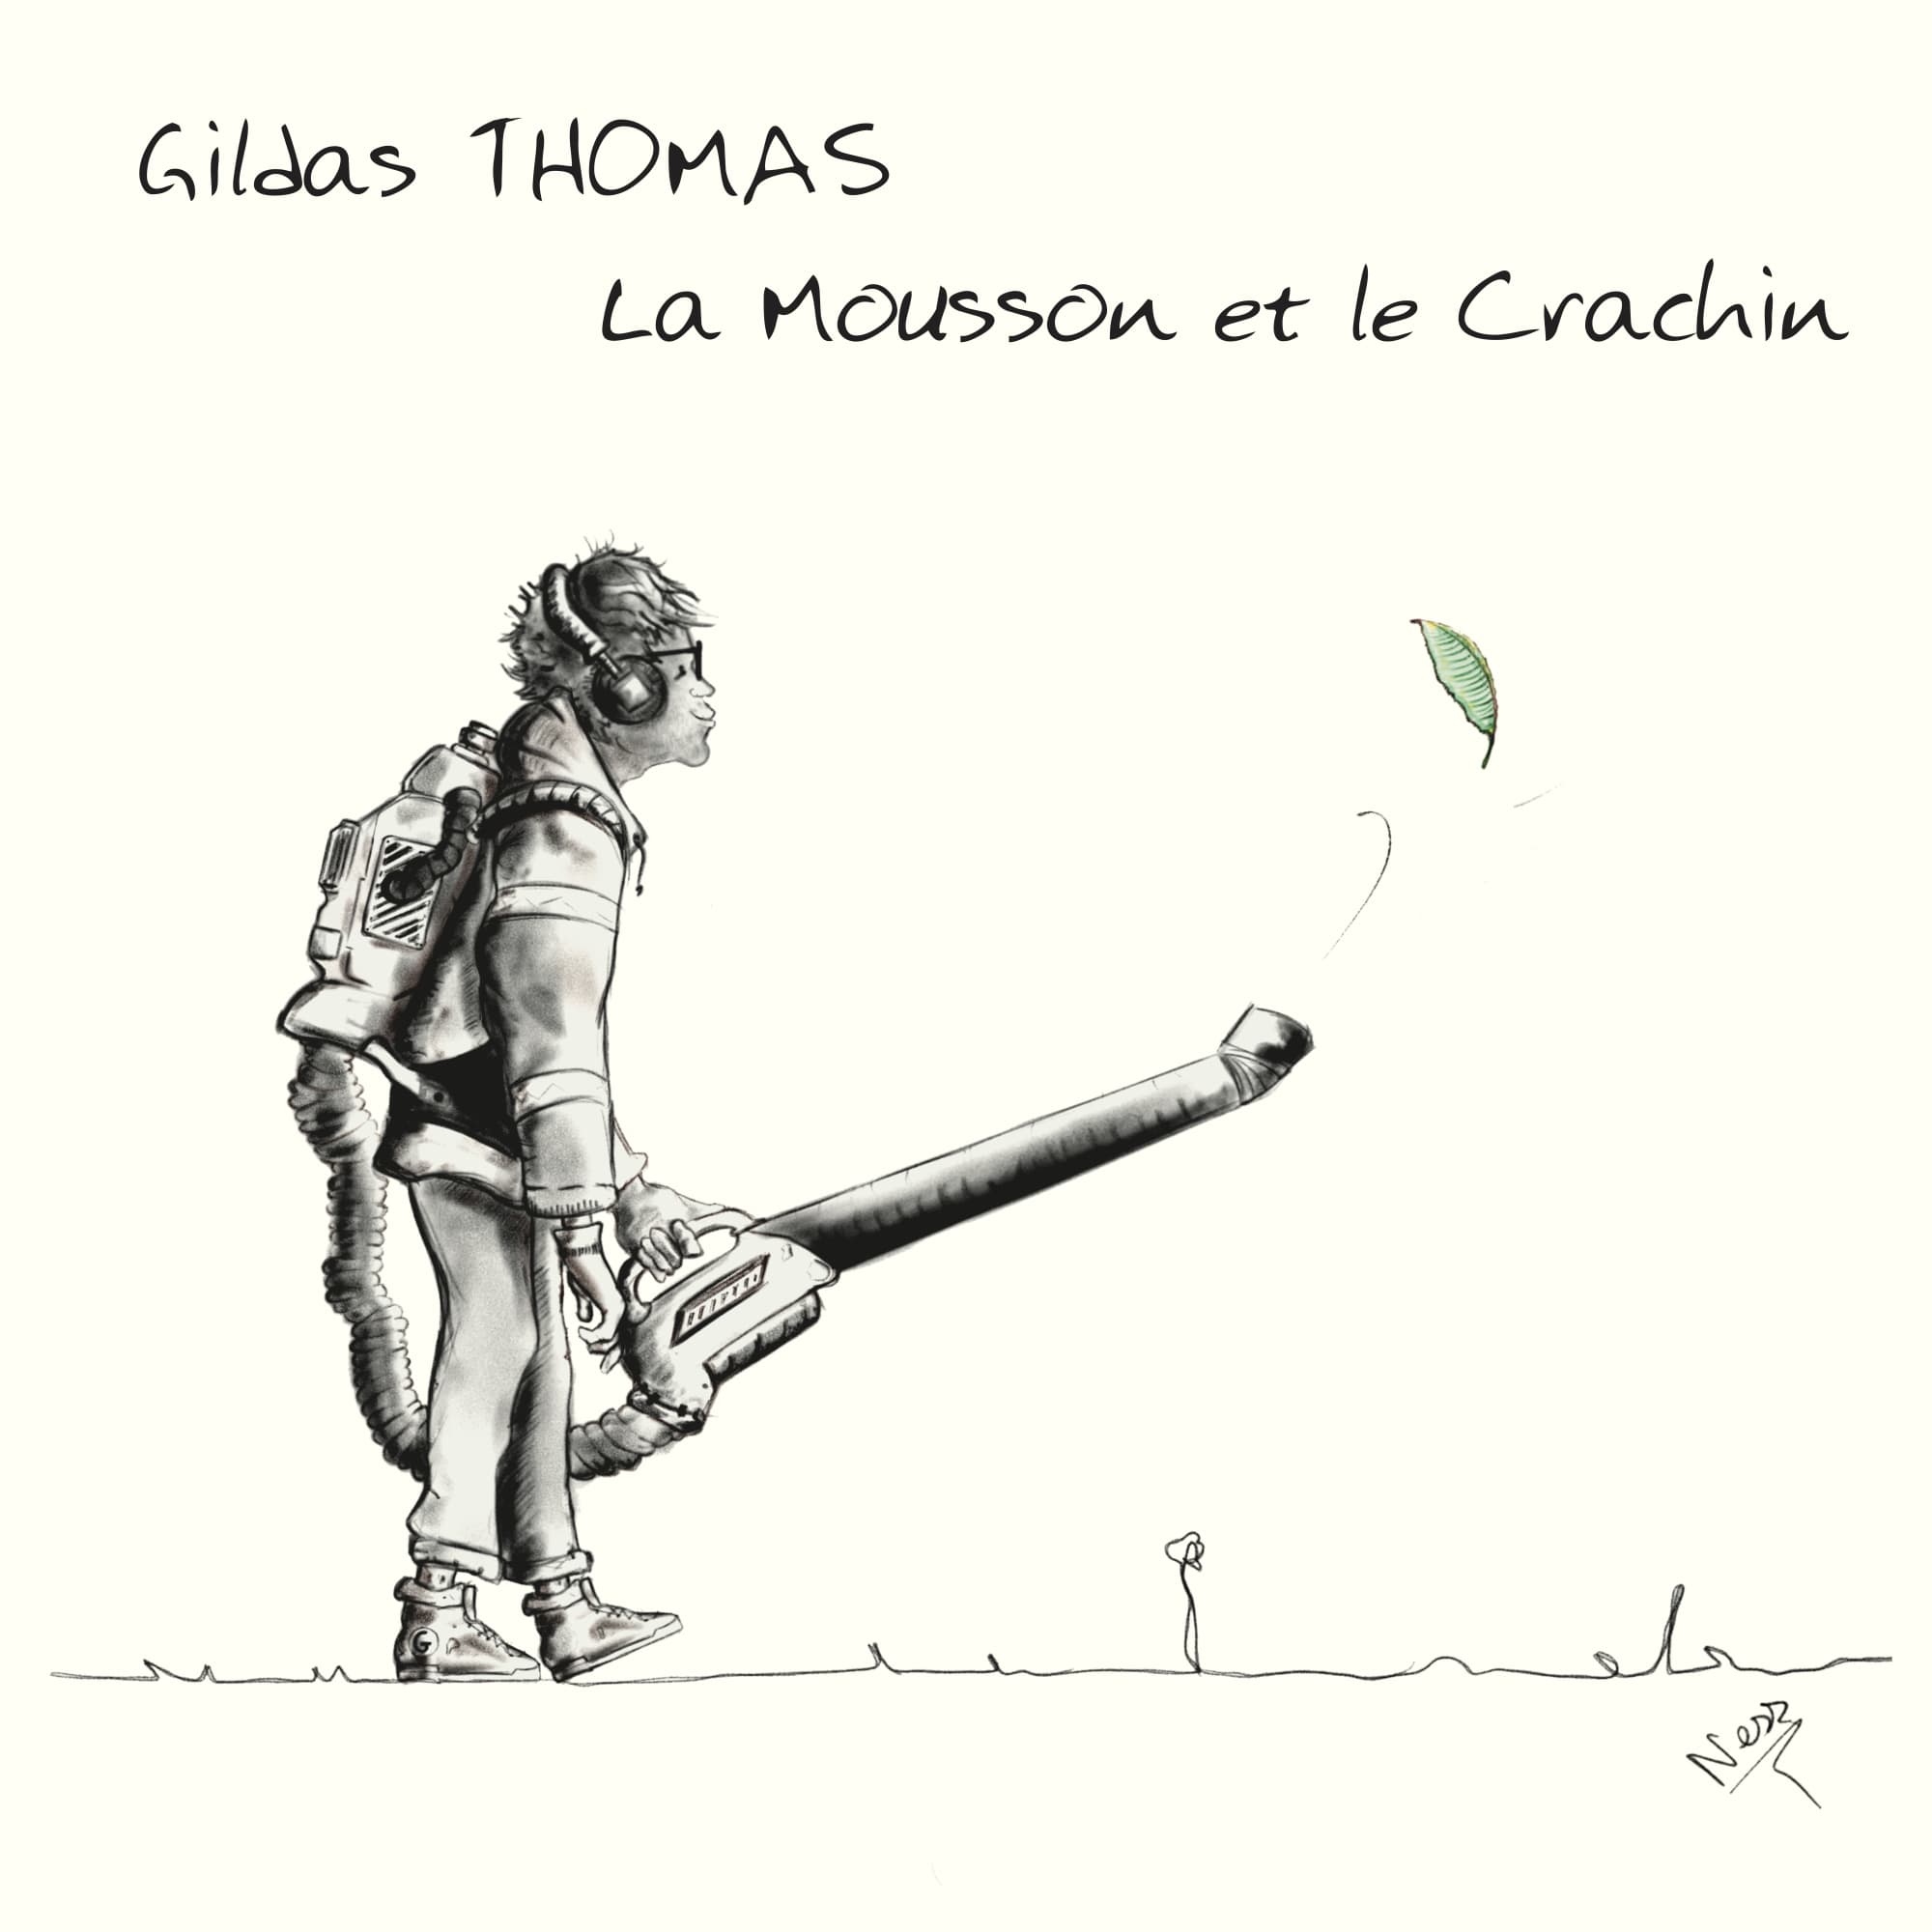 gildas-thomas-chantiste-chanteur-compositeur-paris-album-la-mousson-et-le-crachin